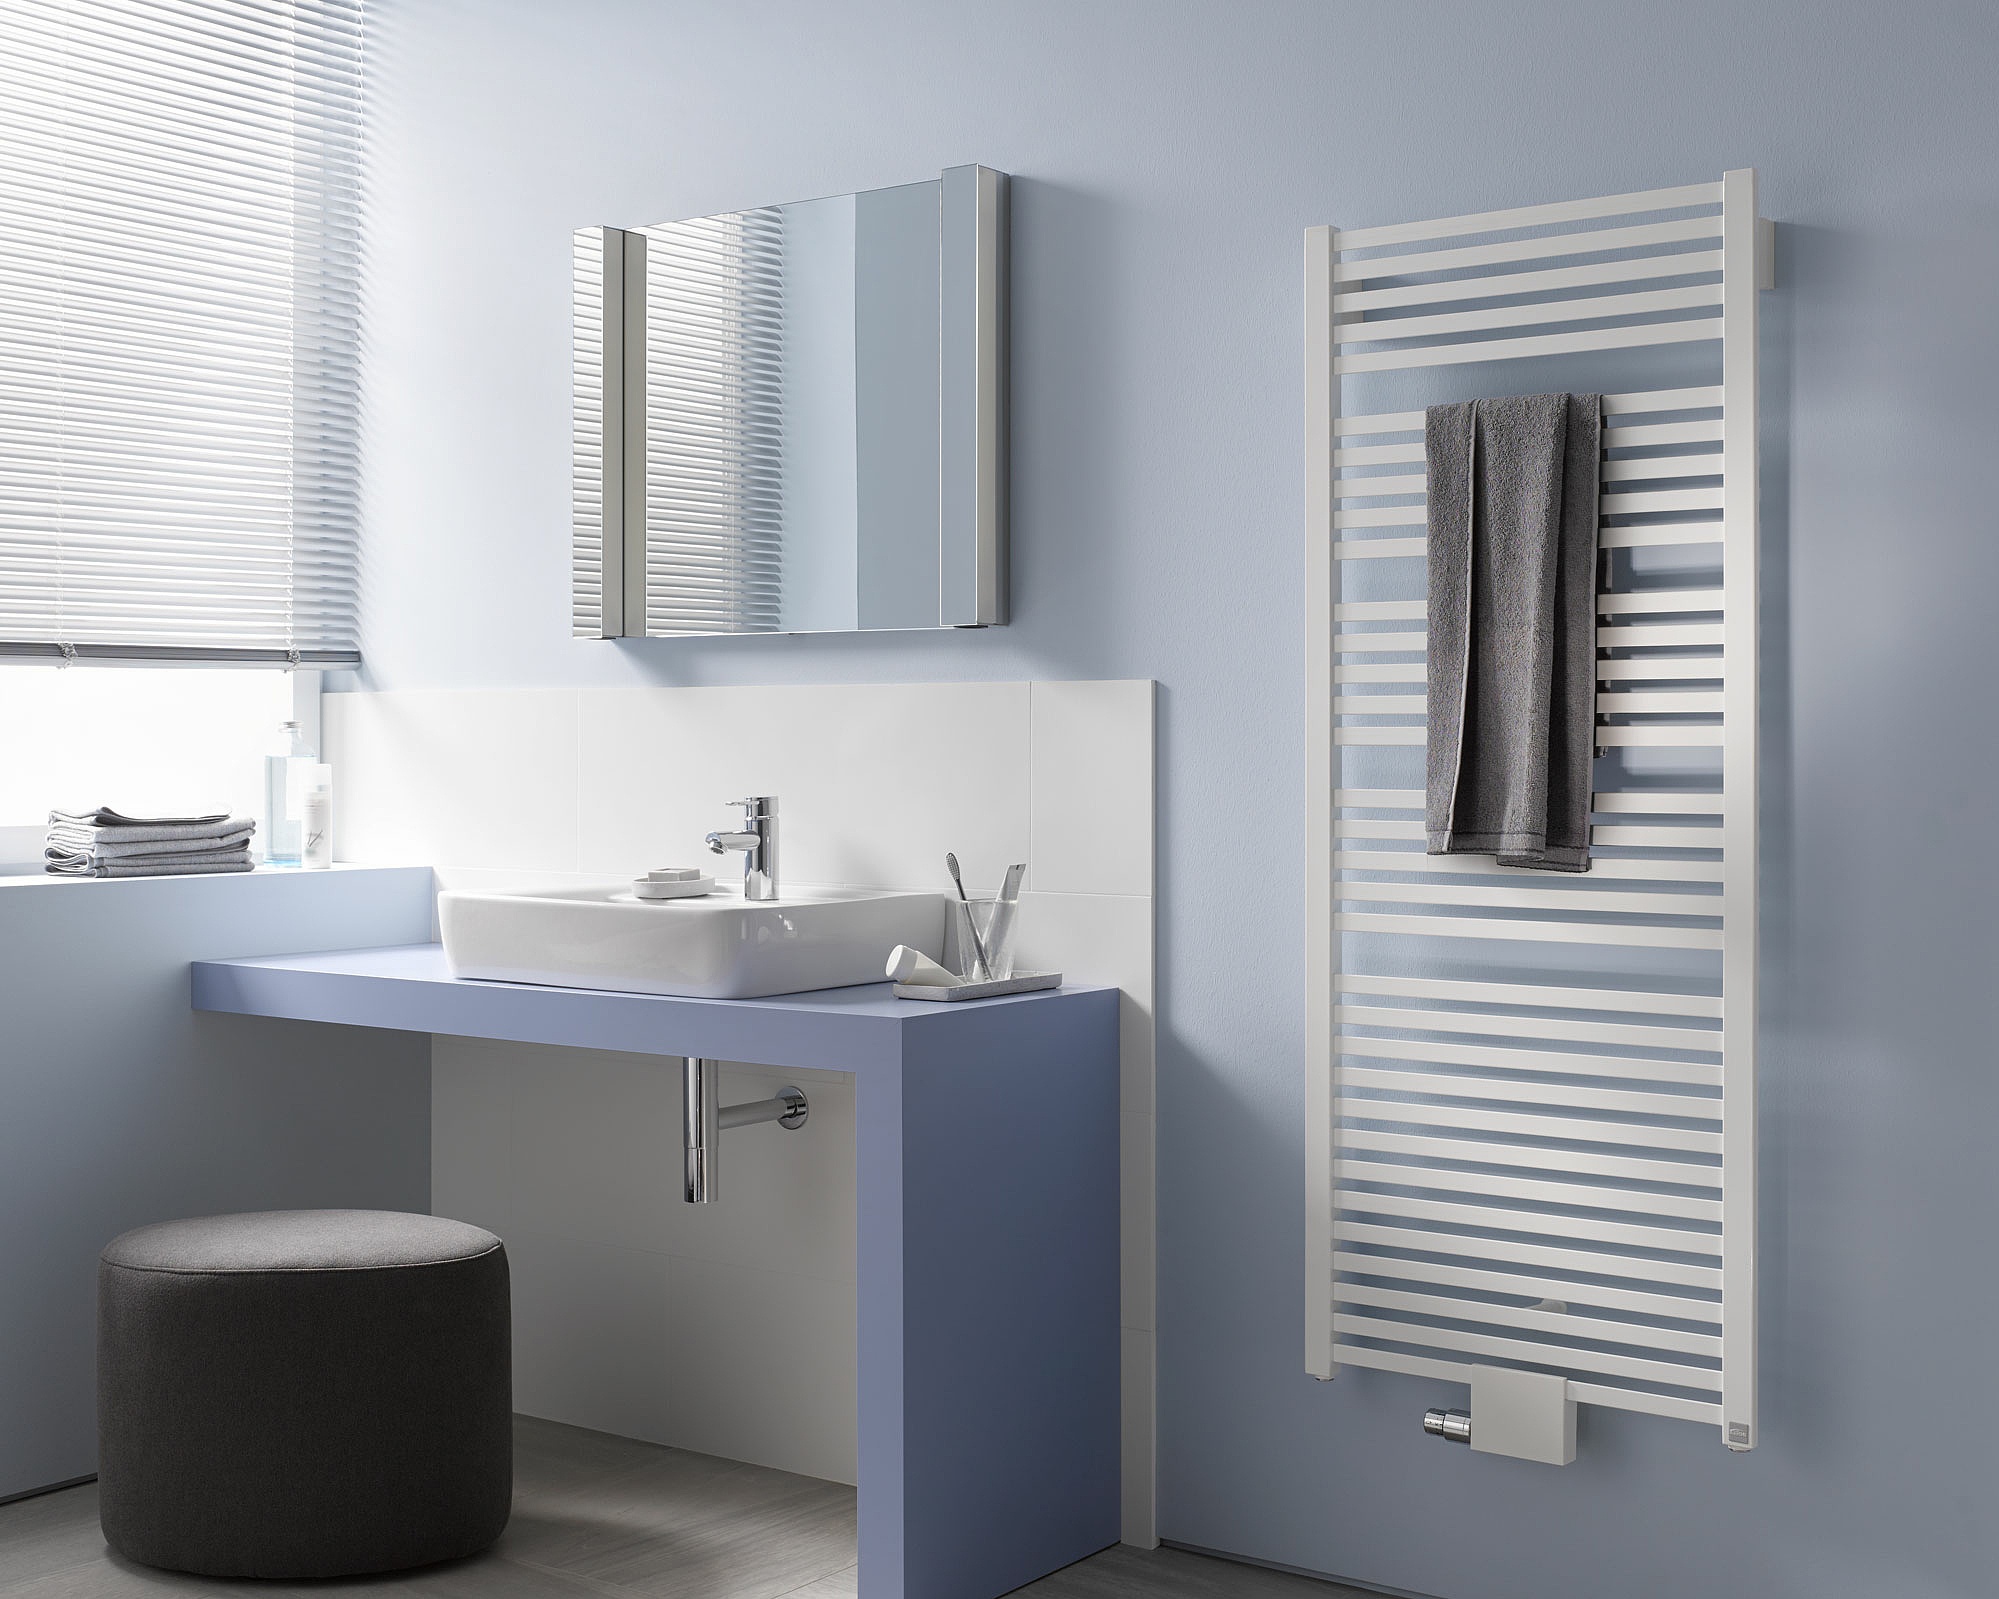 Il radiatore da bagno e di design Kermi Geneo quadris offre molta flessibilità nella progettazione e nell'installazione.